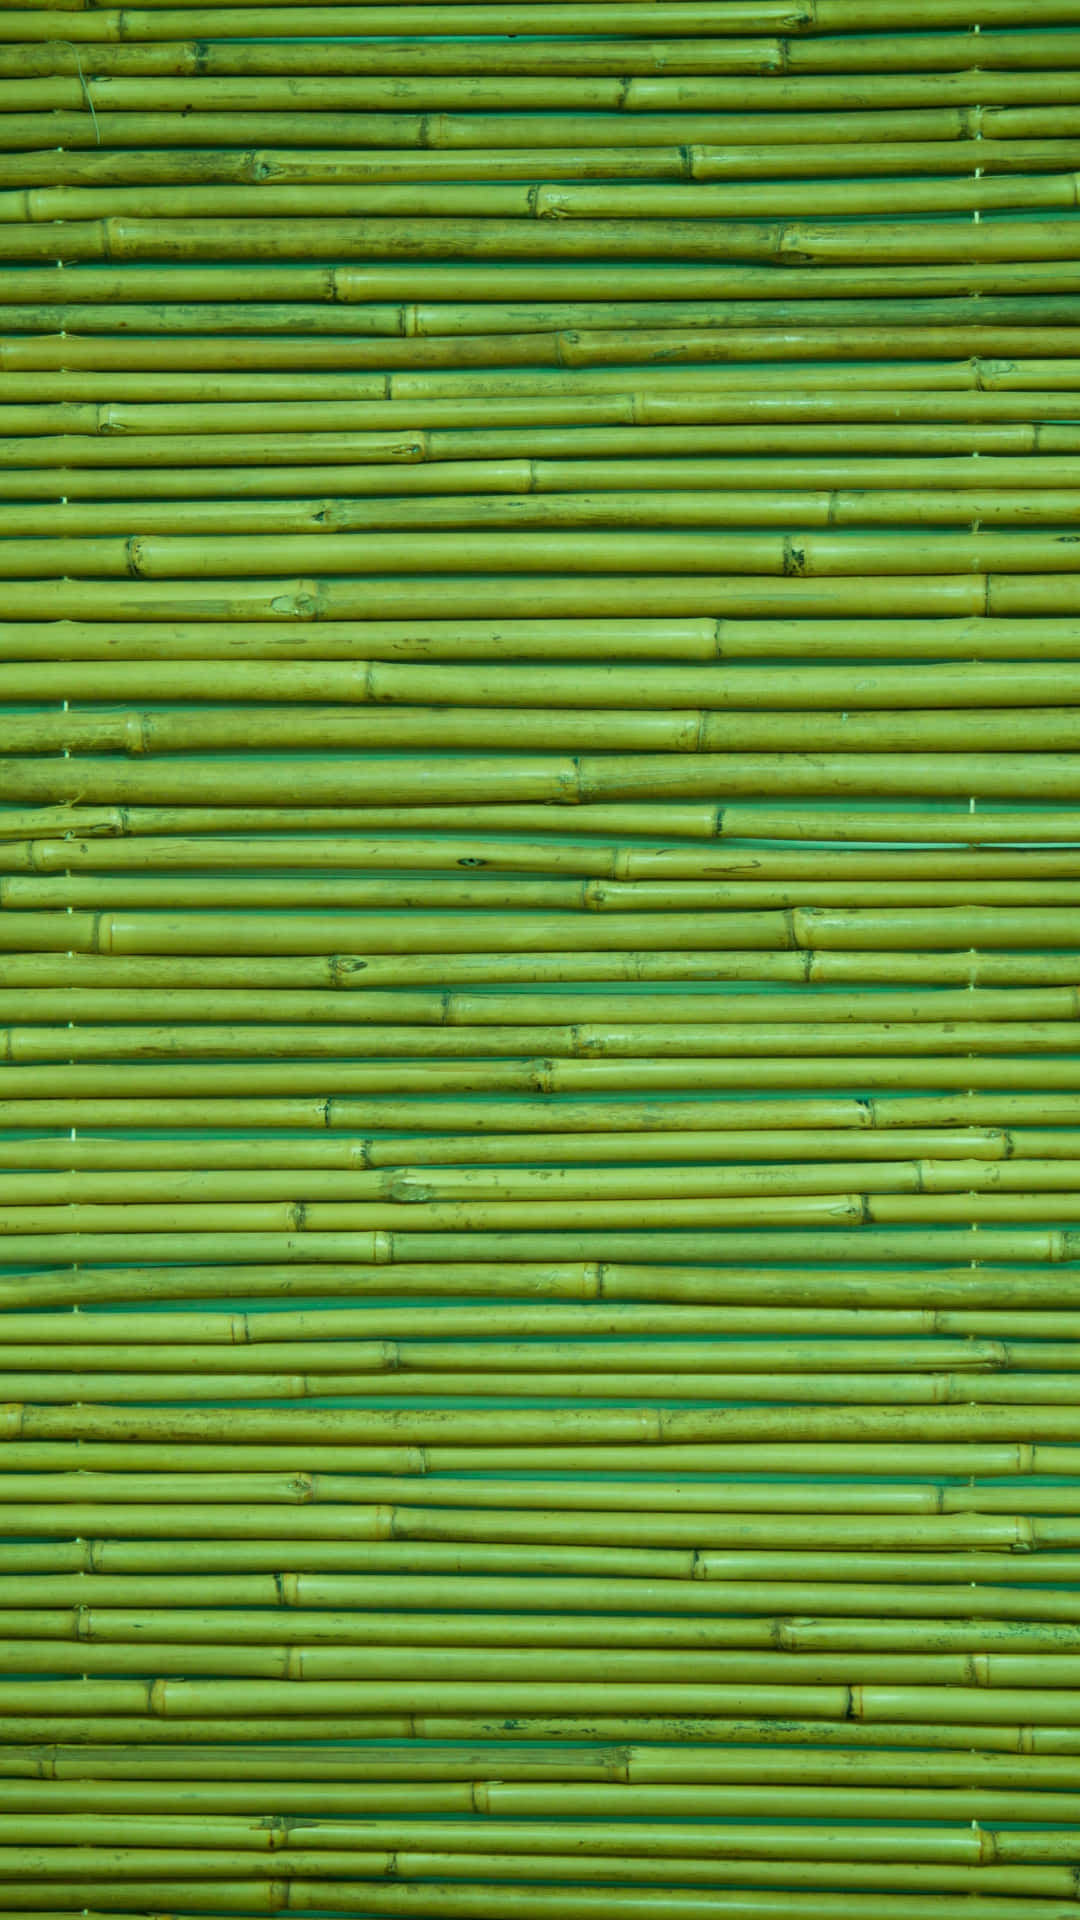 Fotode Fondo De Pantalla De Red De Bambú Fondo de pantalla